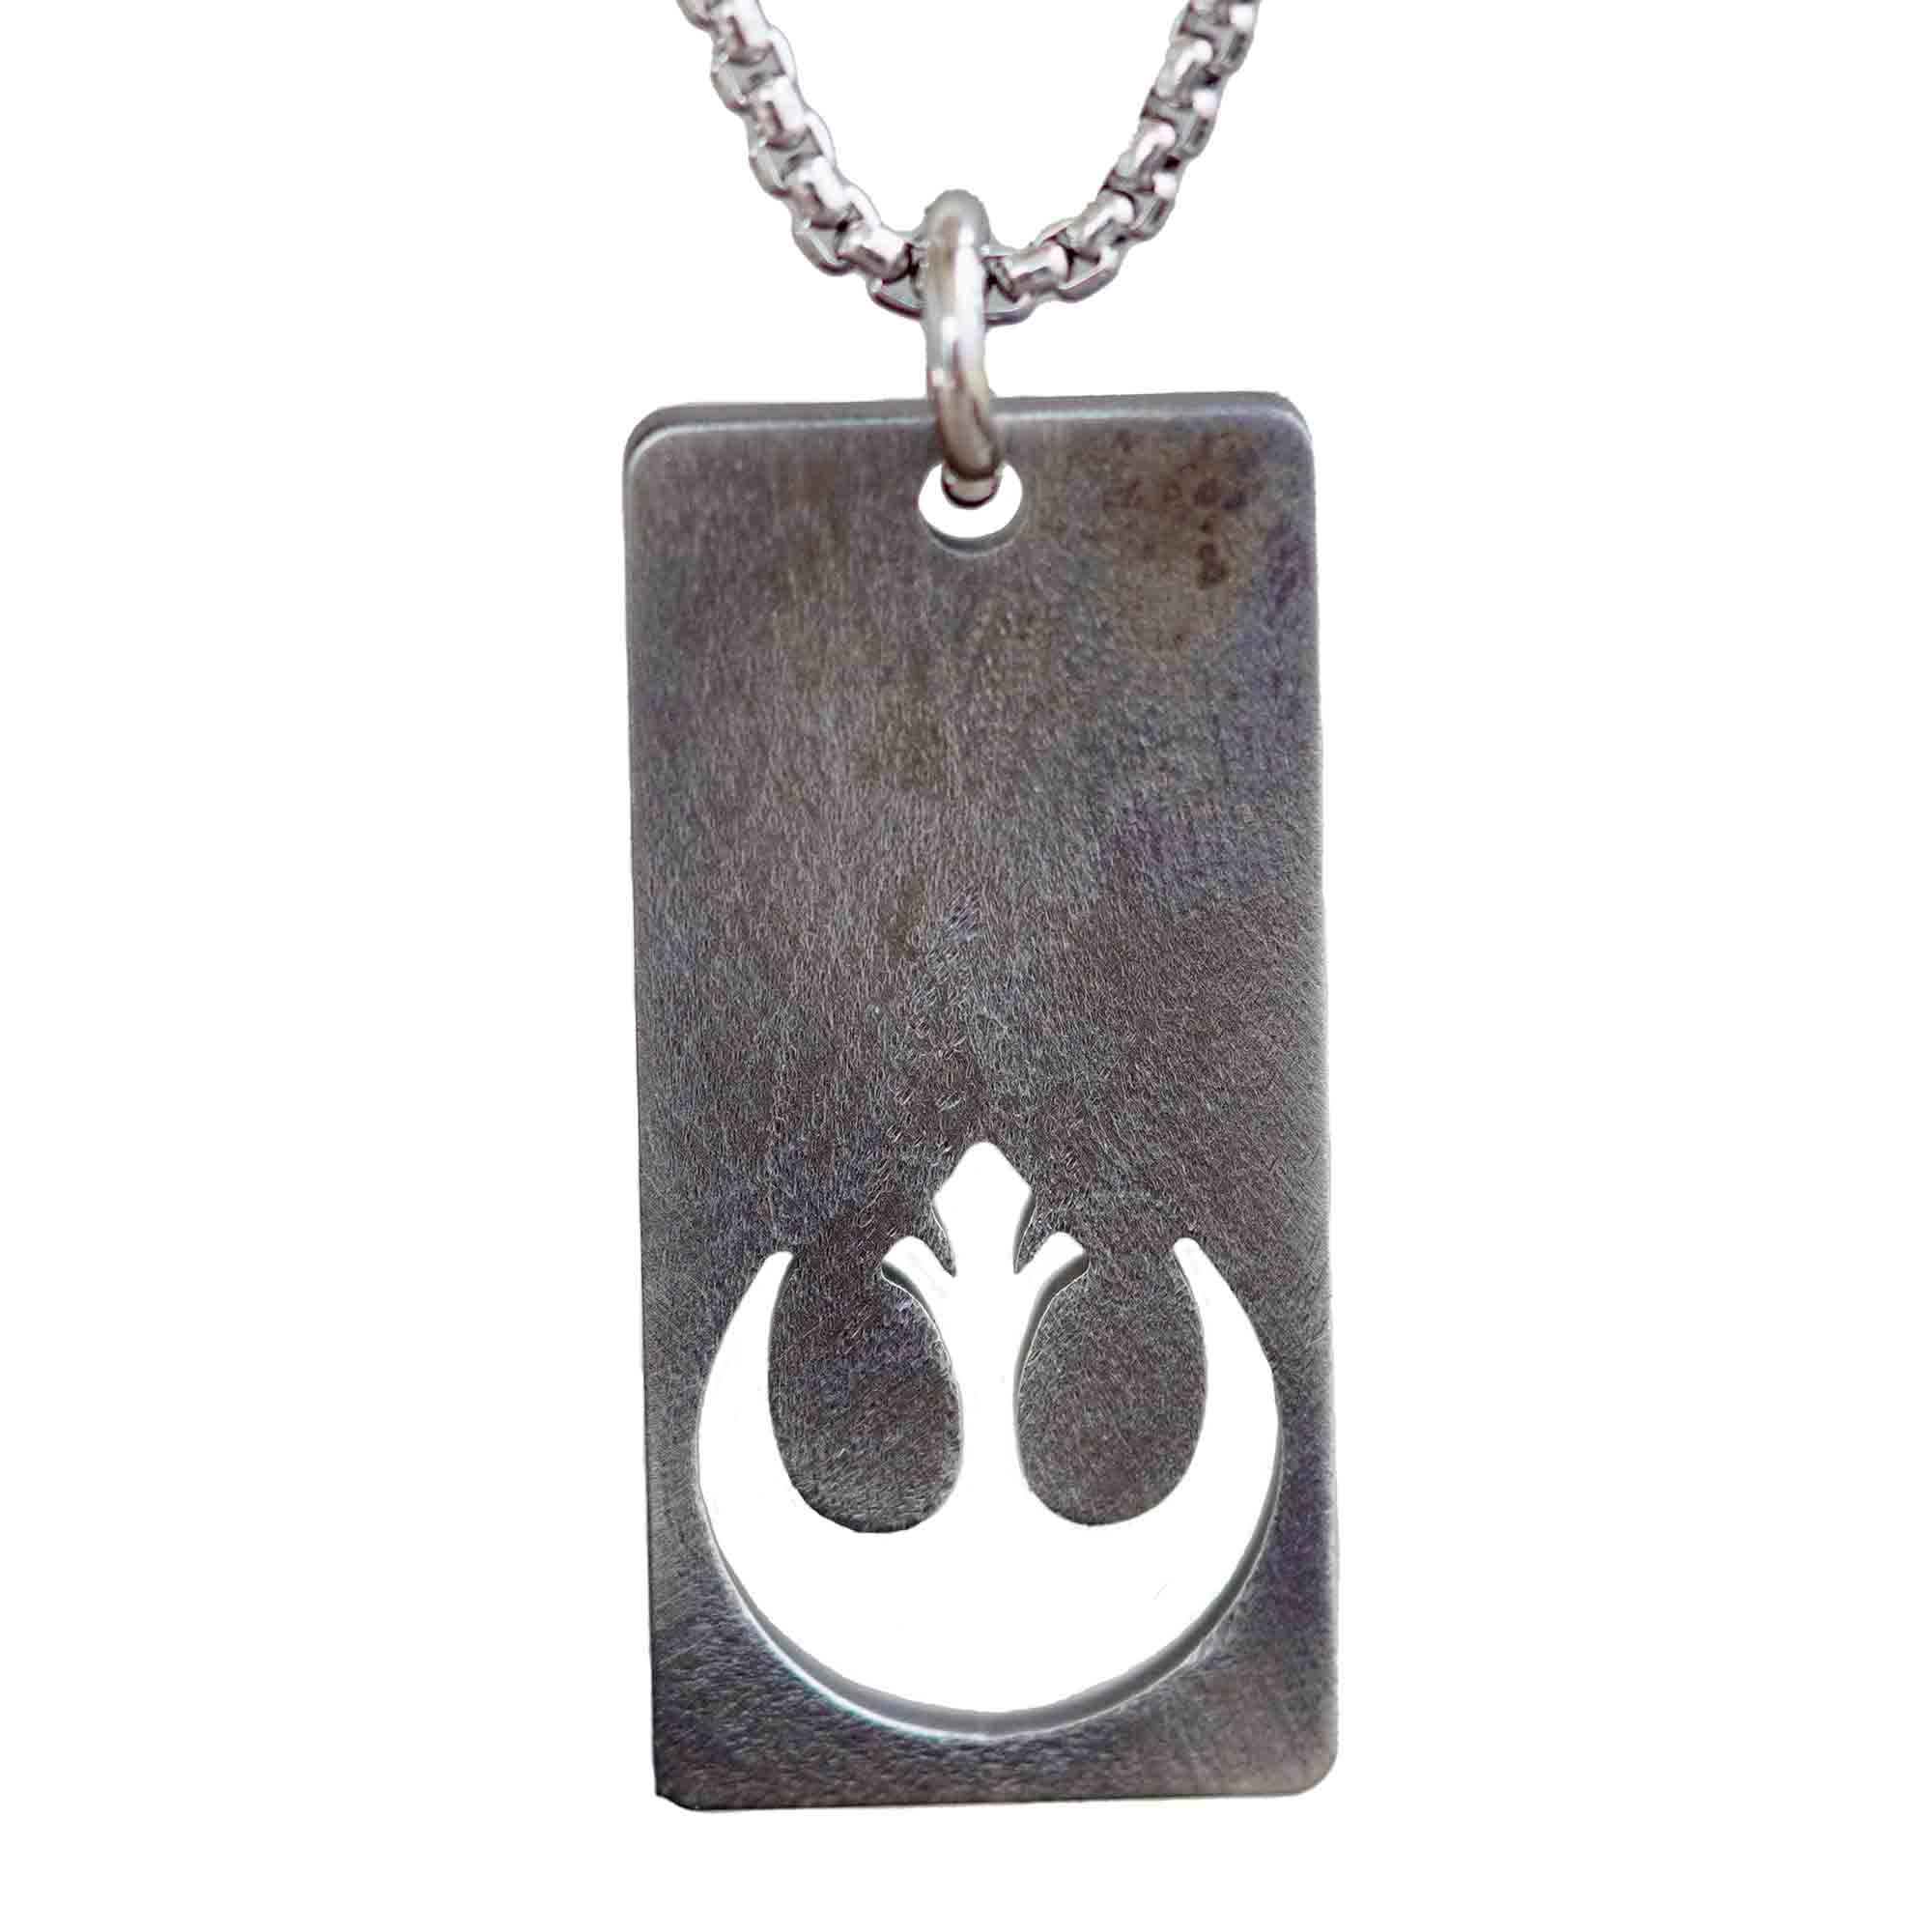 Rebel Alliance Necklace Star Wars Jewelry Leia Organa luke skywalker